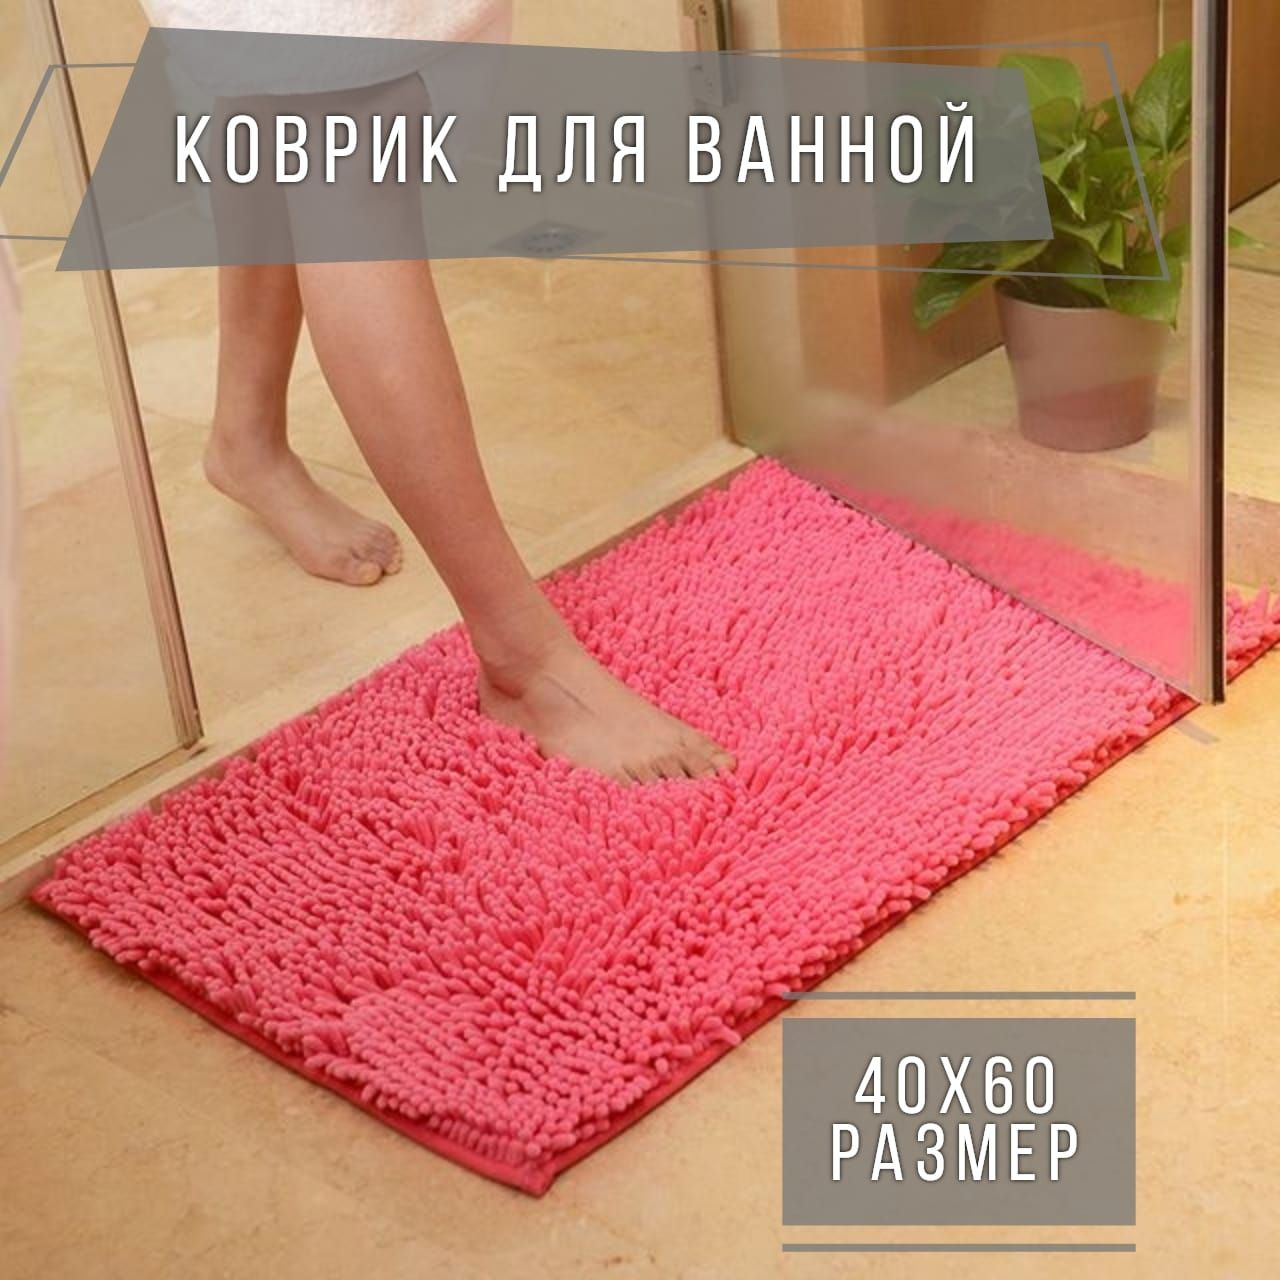 коврики в ванной в интерьере